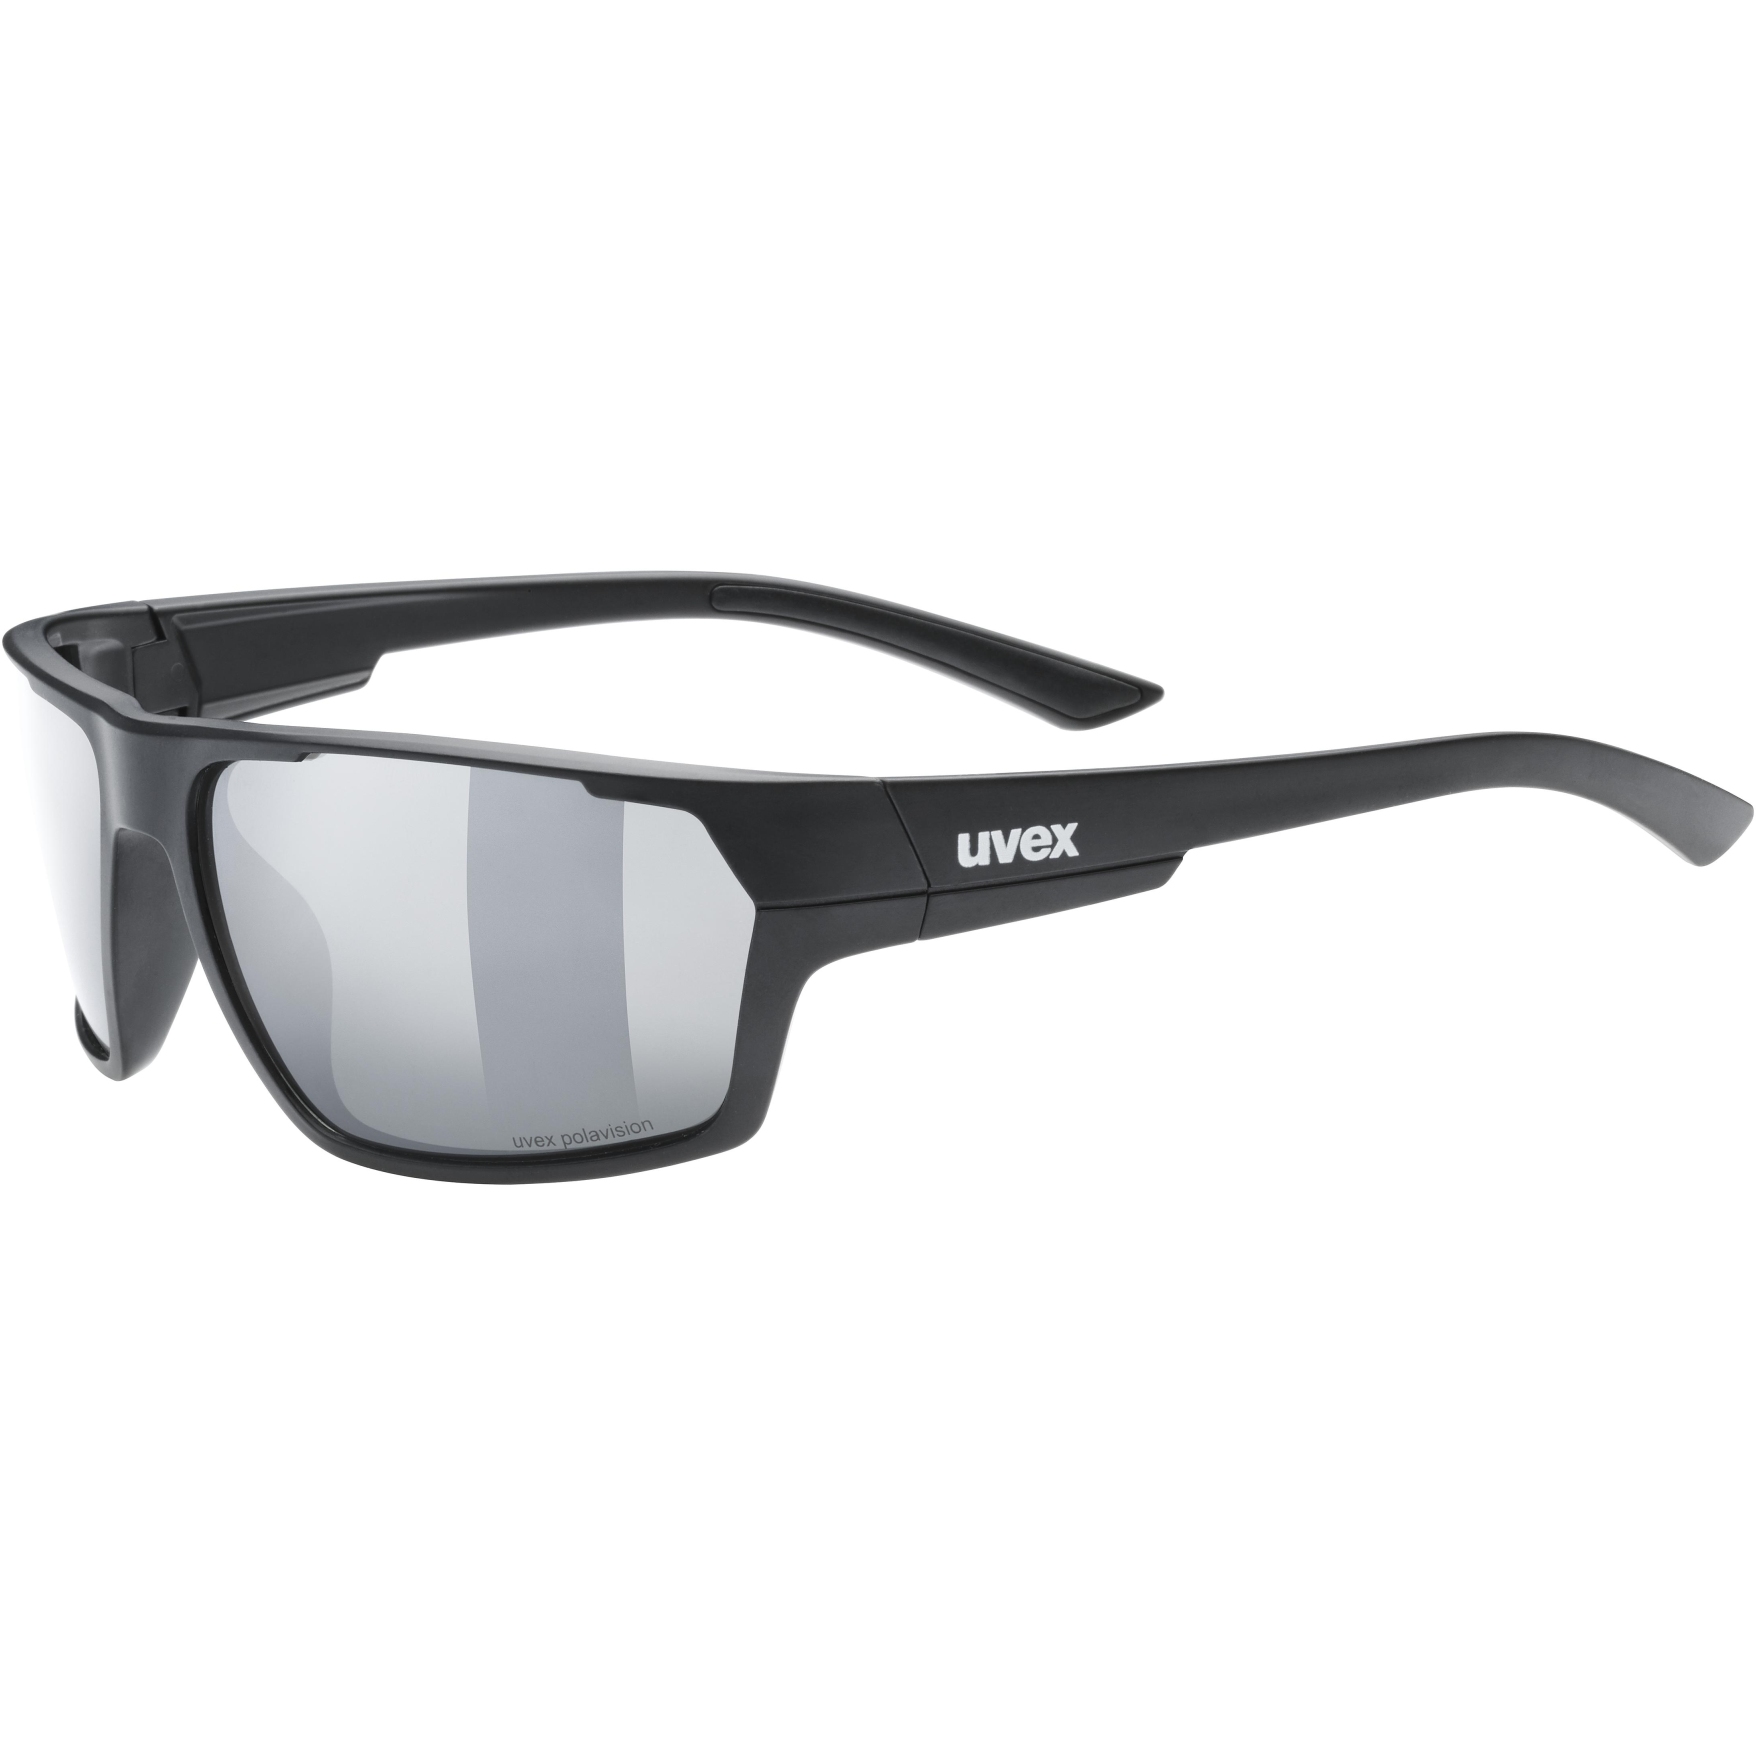 Produktbild von Uvex sportstyle 233 P Brille - black matt/polavision litemirror silver